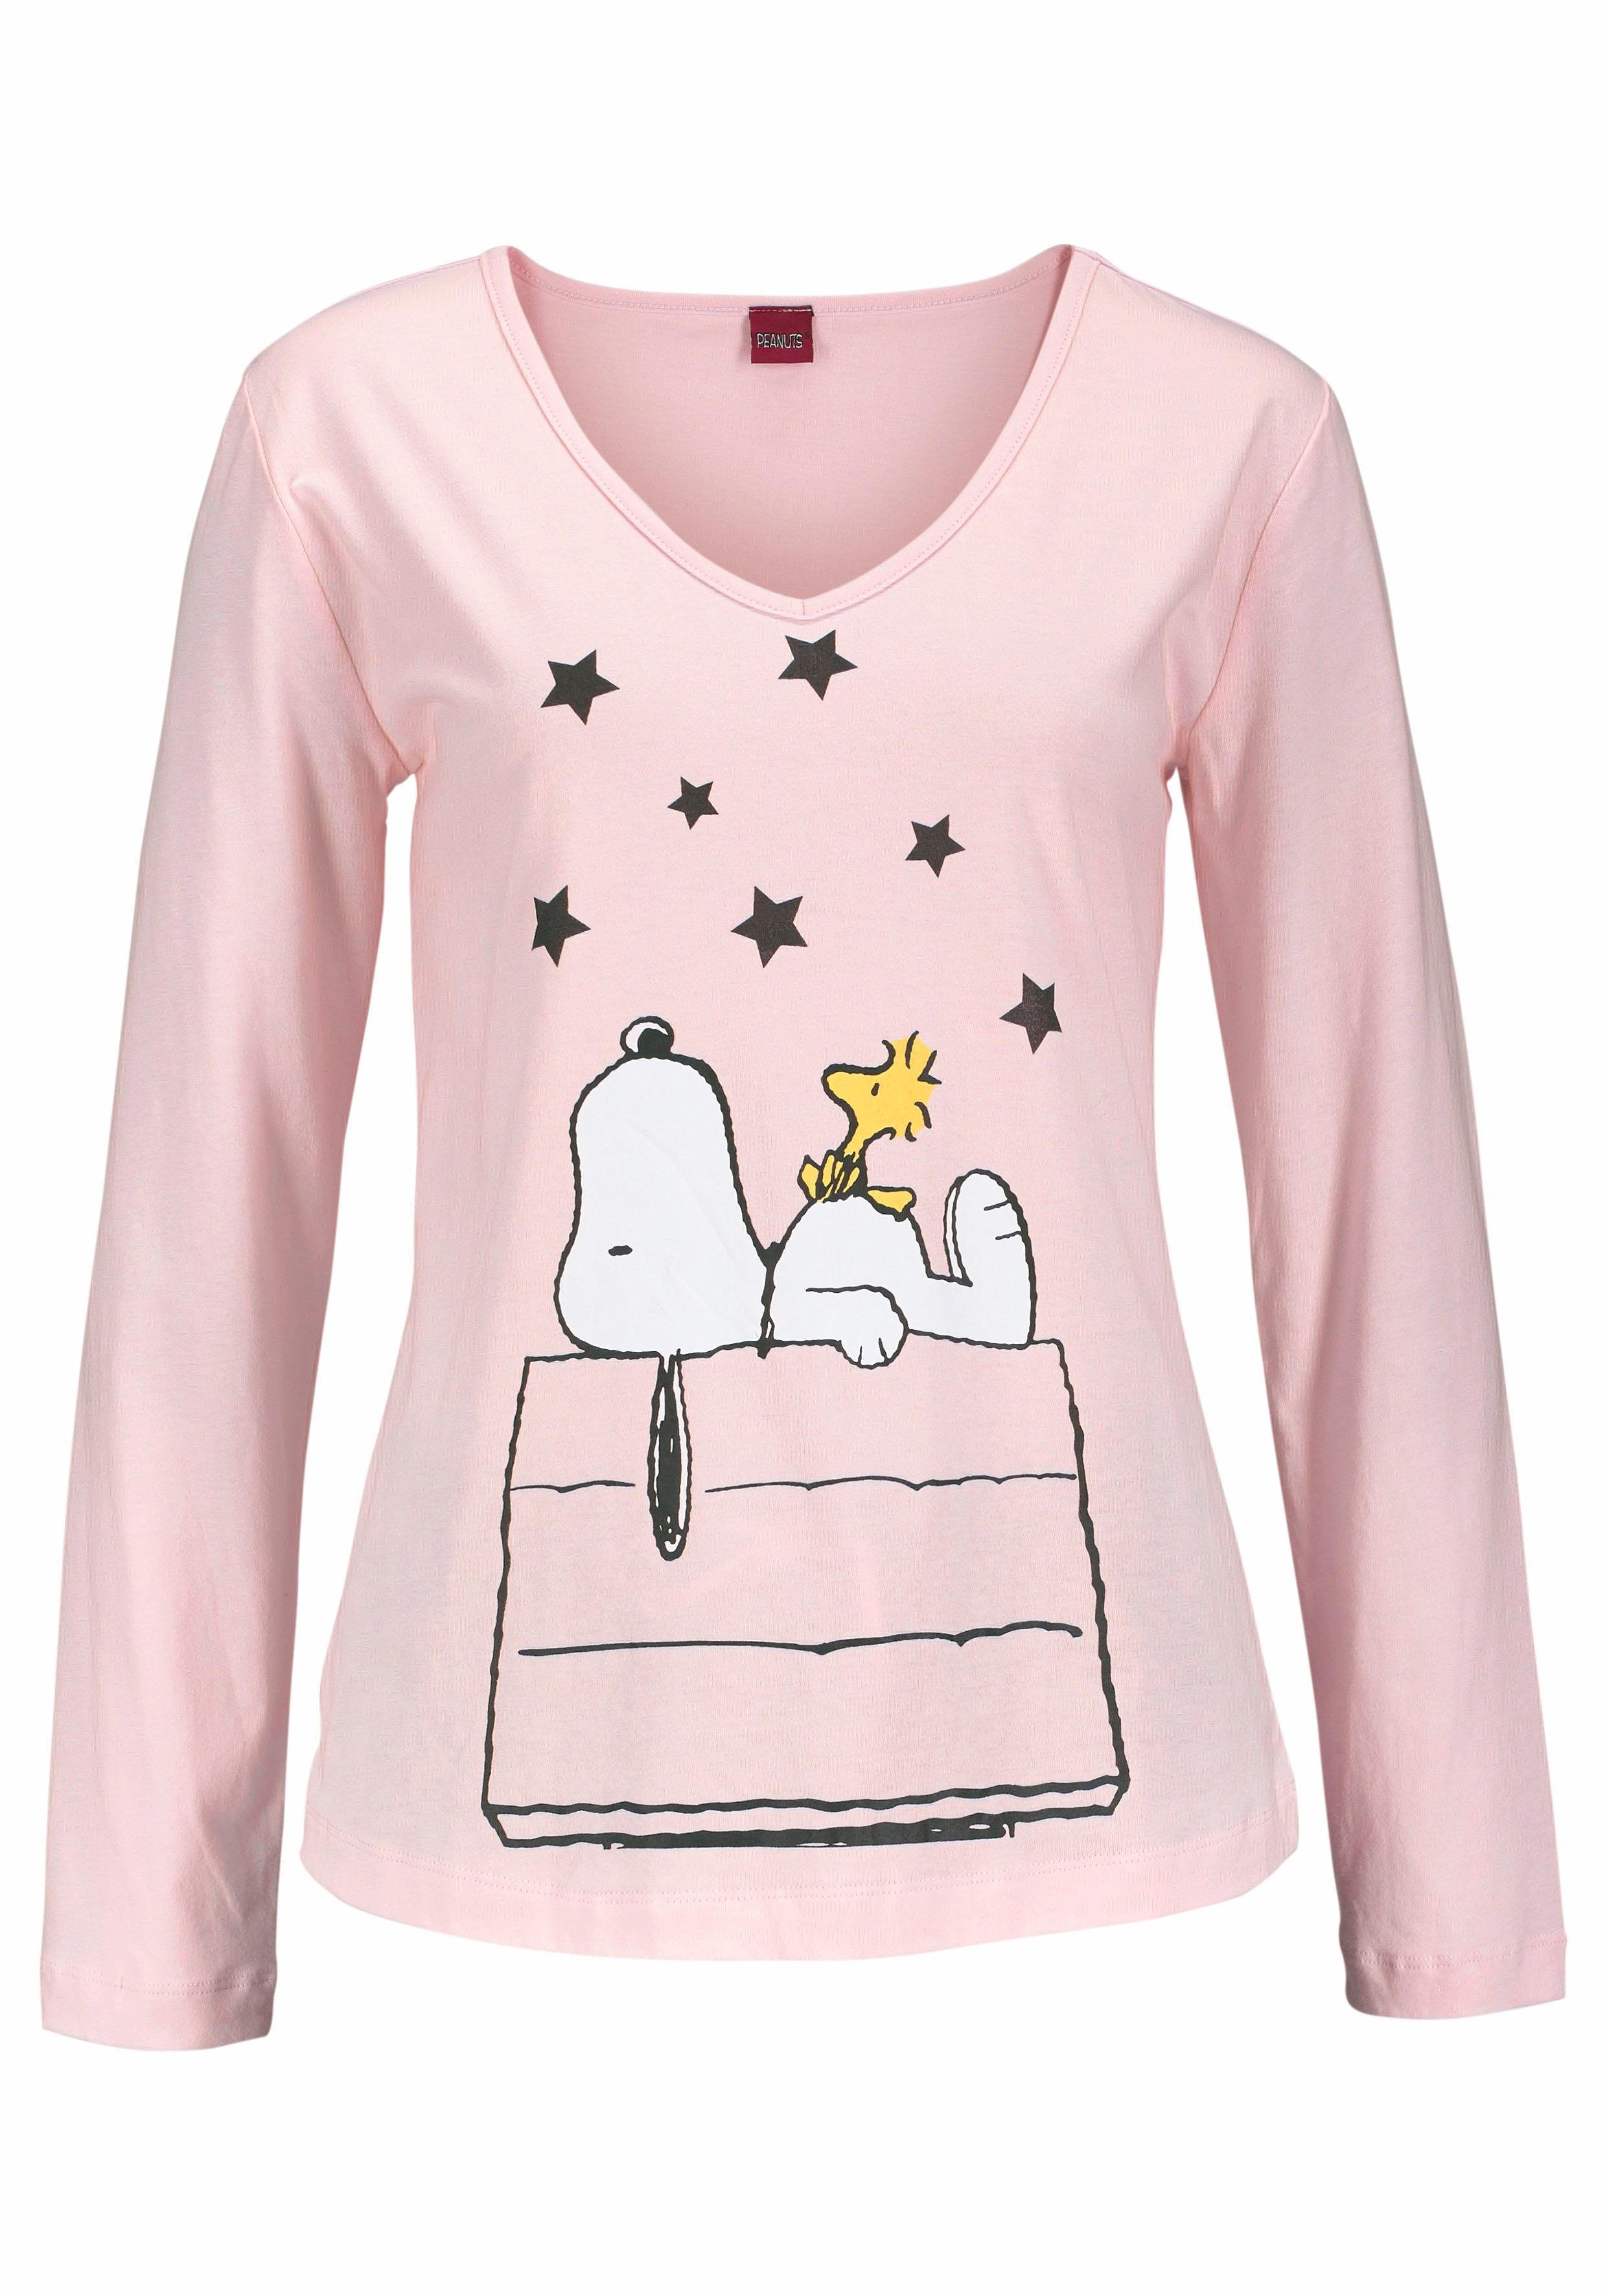 PEANUTS tlg., niedlichen im Snoopy-Design Stück) langer 1 Pyjama (2 Form in